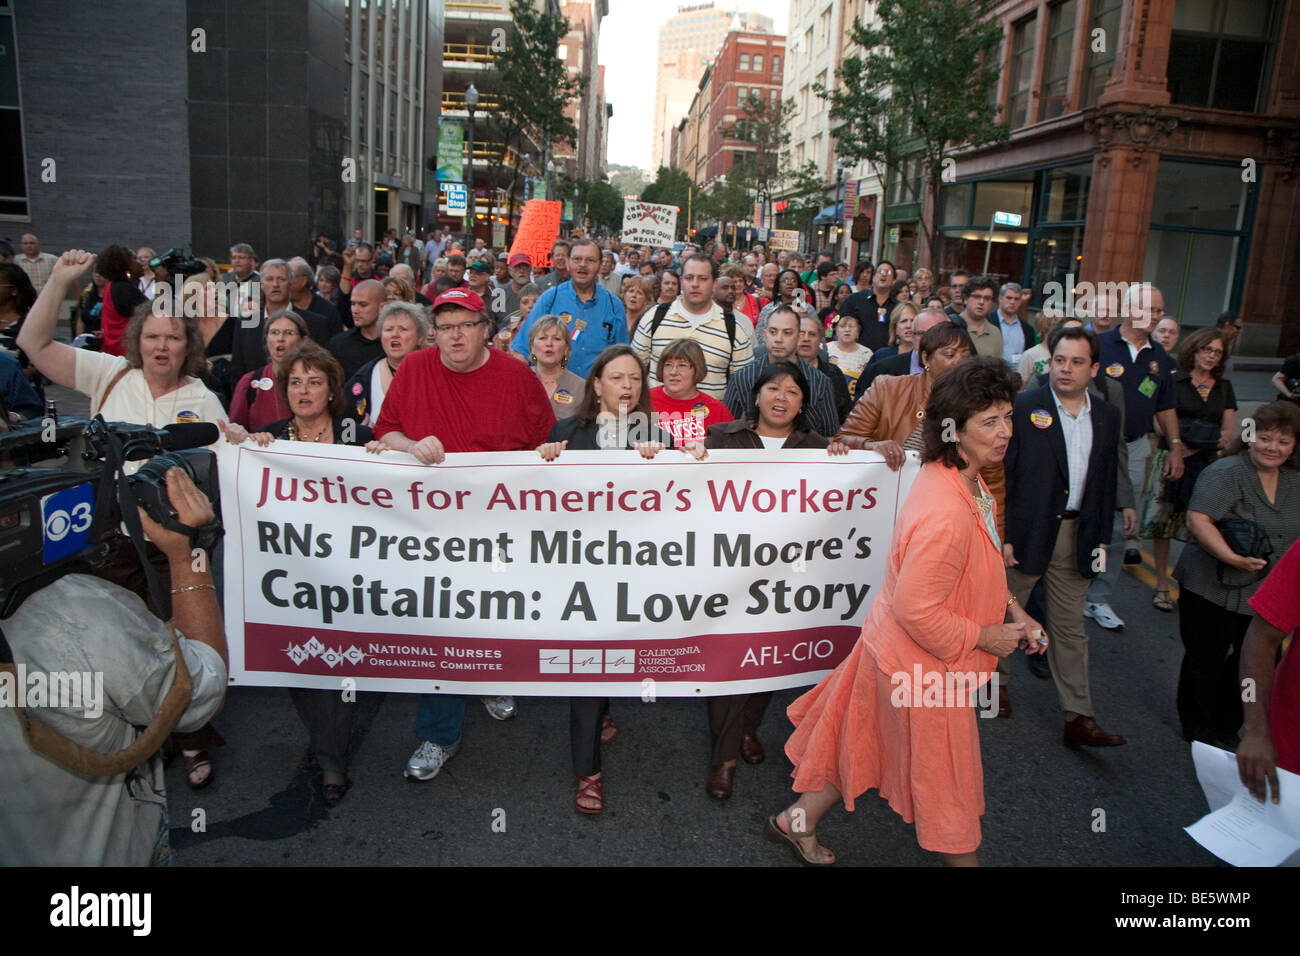 Michael Moore marchas con miembros del sindicato al teatro para nosotros estreno de su nueva película, "Capitalismo, una historia de amor" Foto de stock